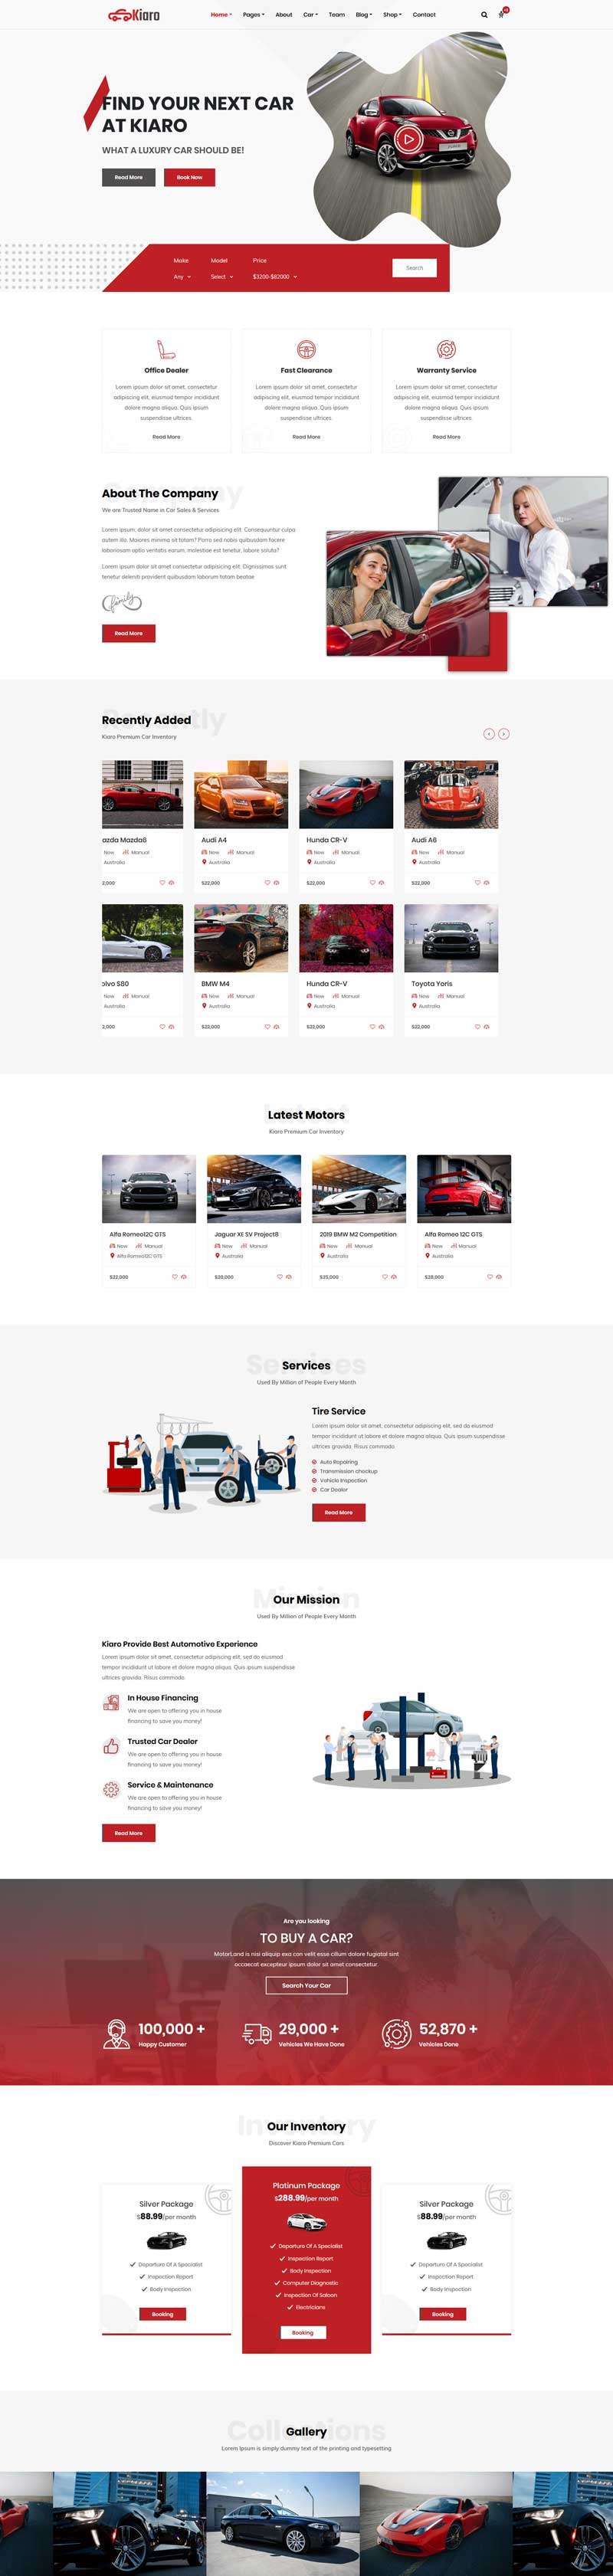 红色响应式汽车销售服务网站HTML模板6310